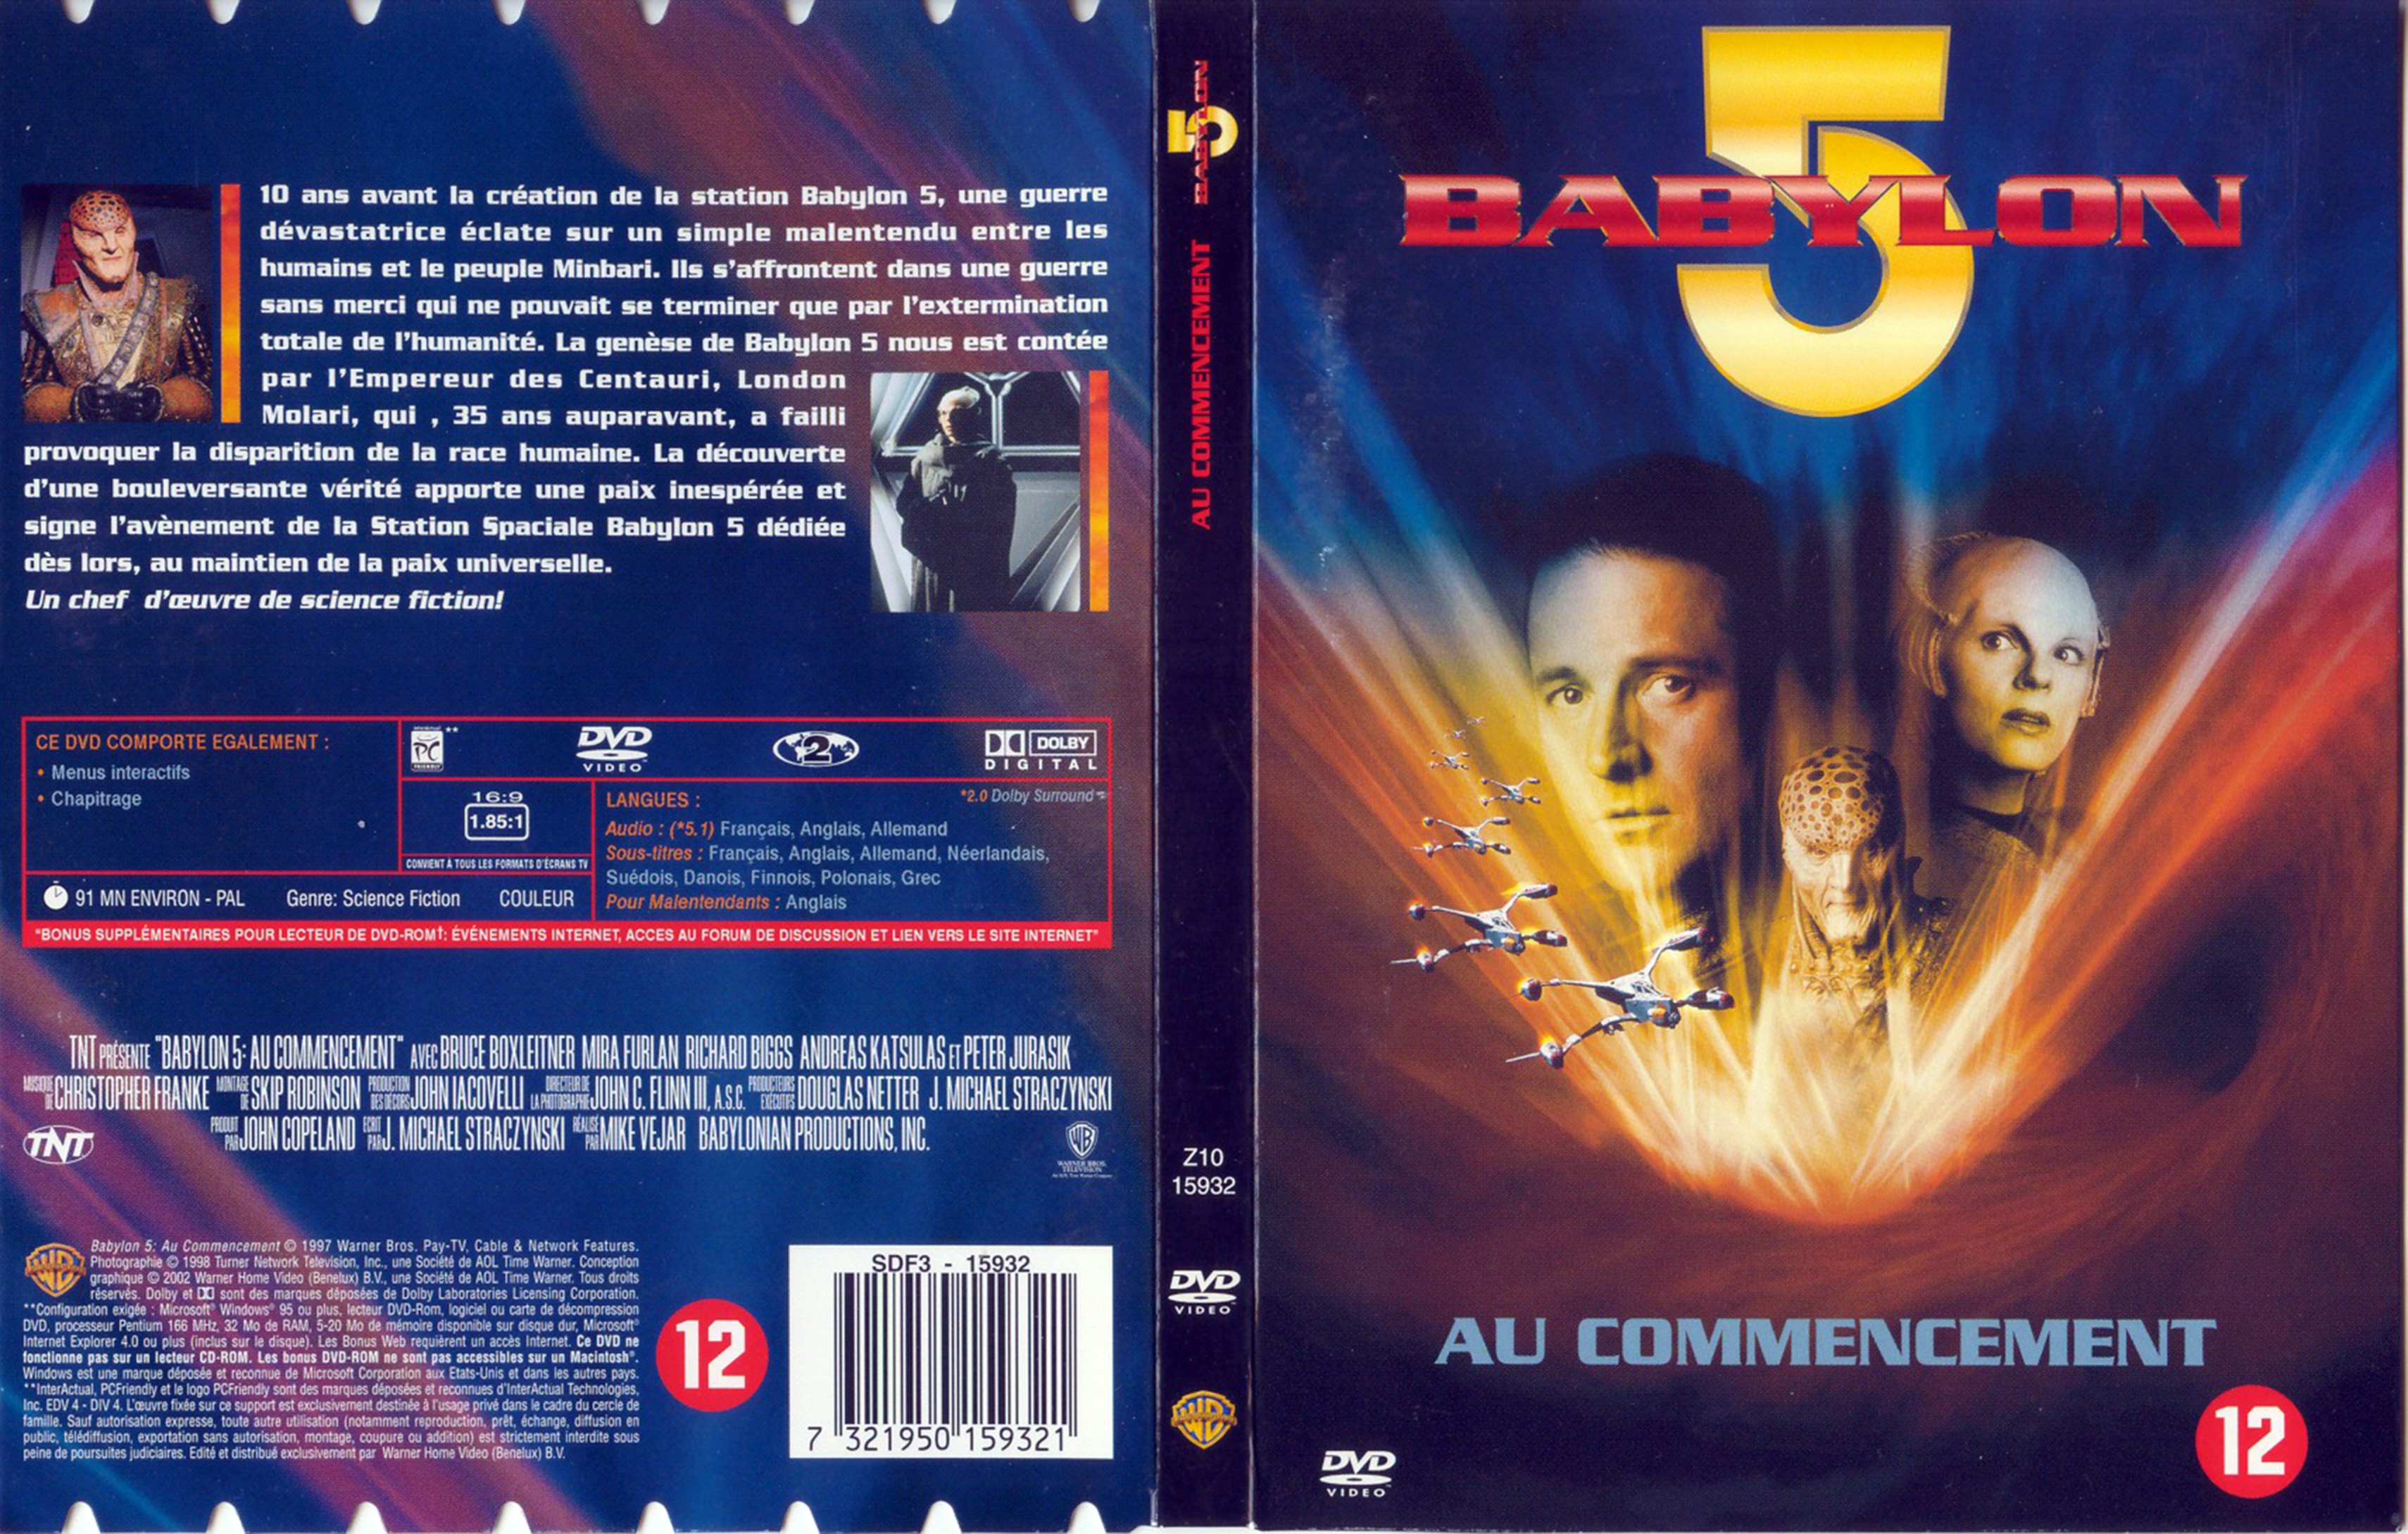 Jaquette DVD Babylon 5 au commencement